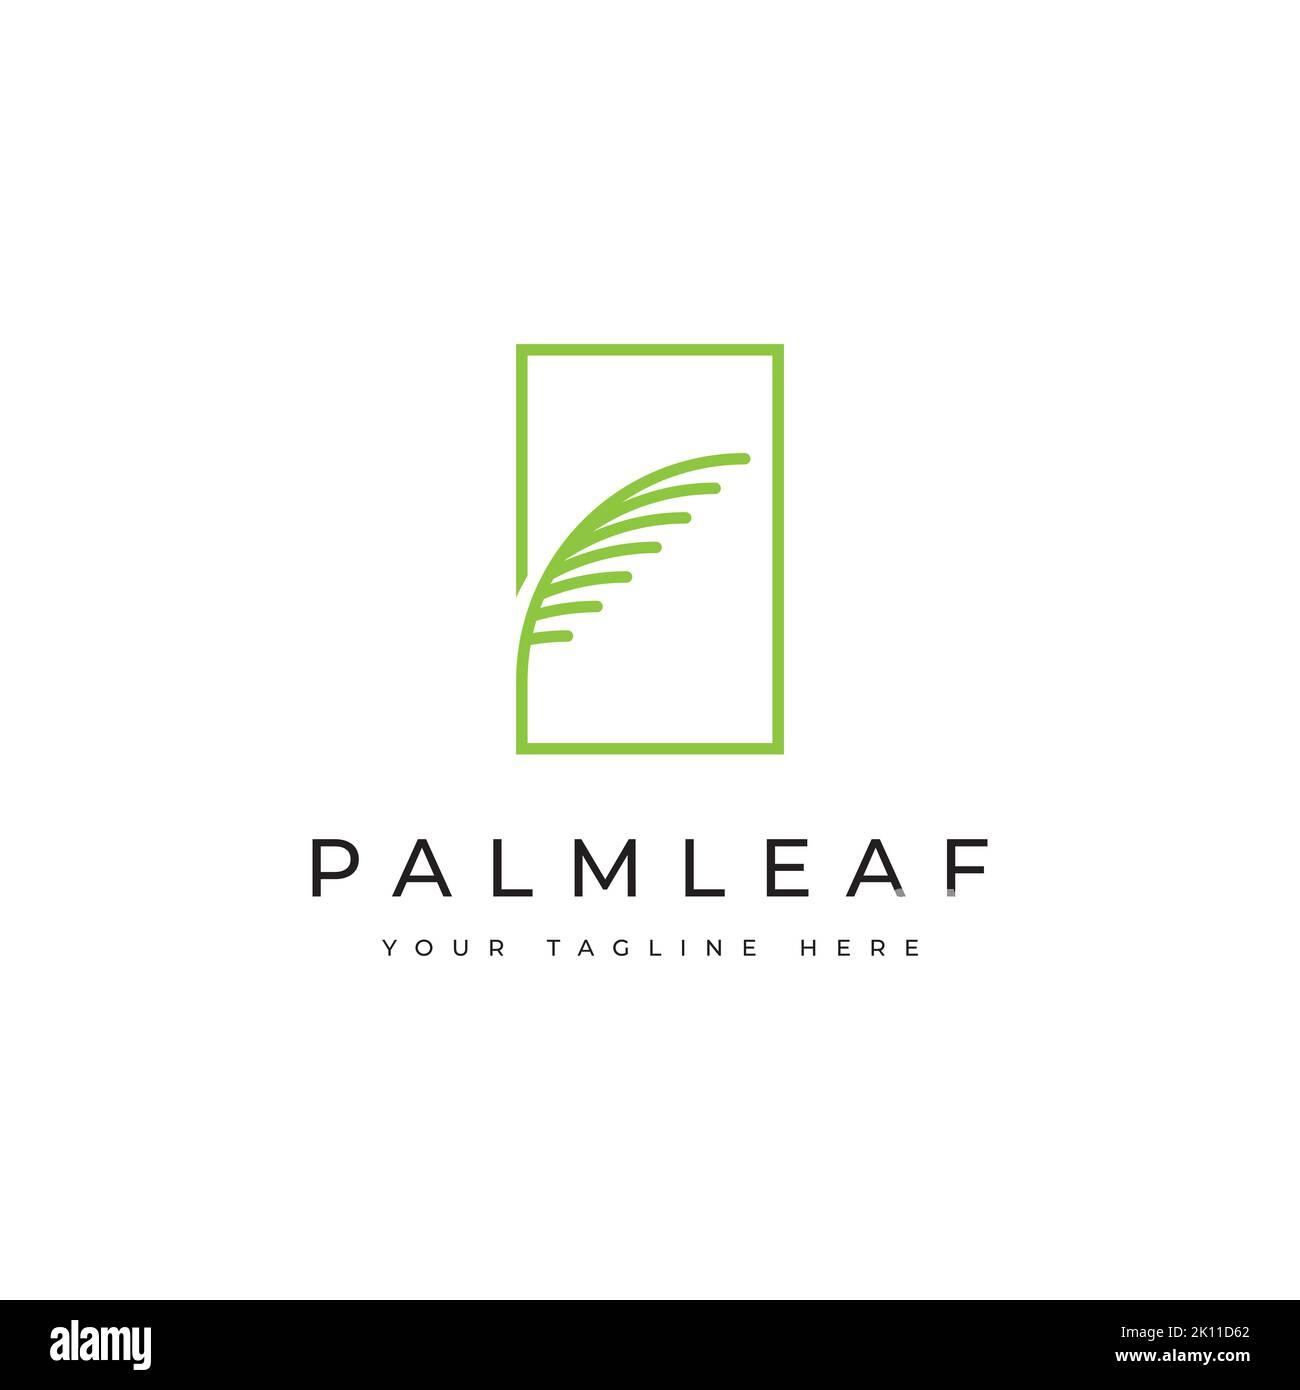 Kokosnussbaum Logo Design Vorlage Premium. Inspiration für Palmenikonen Stock Vektor